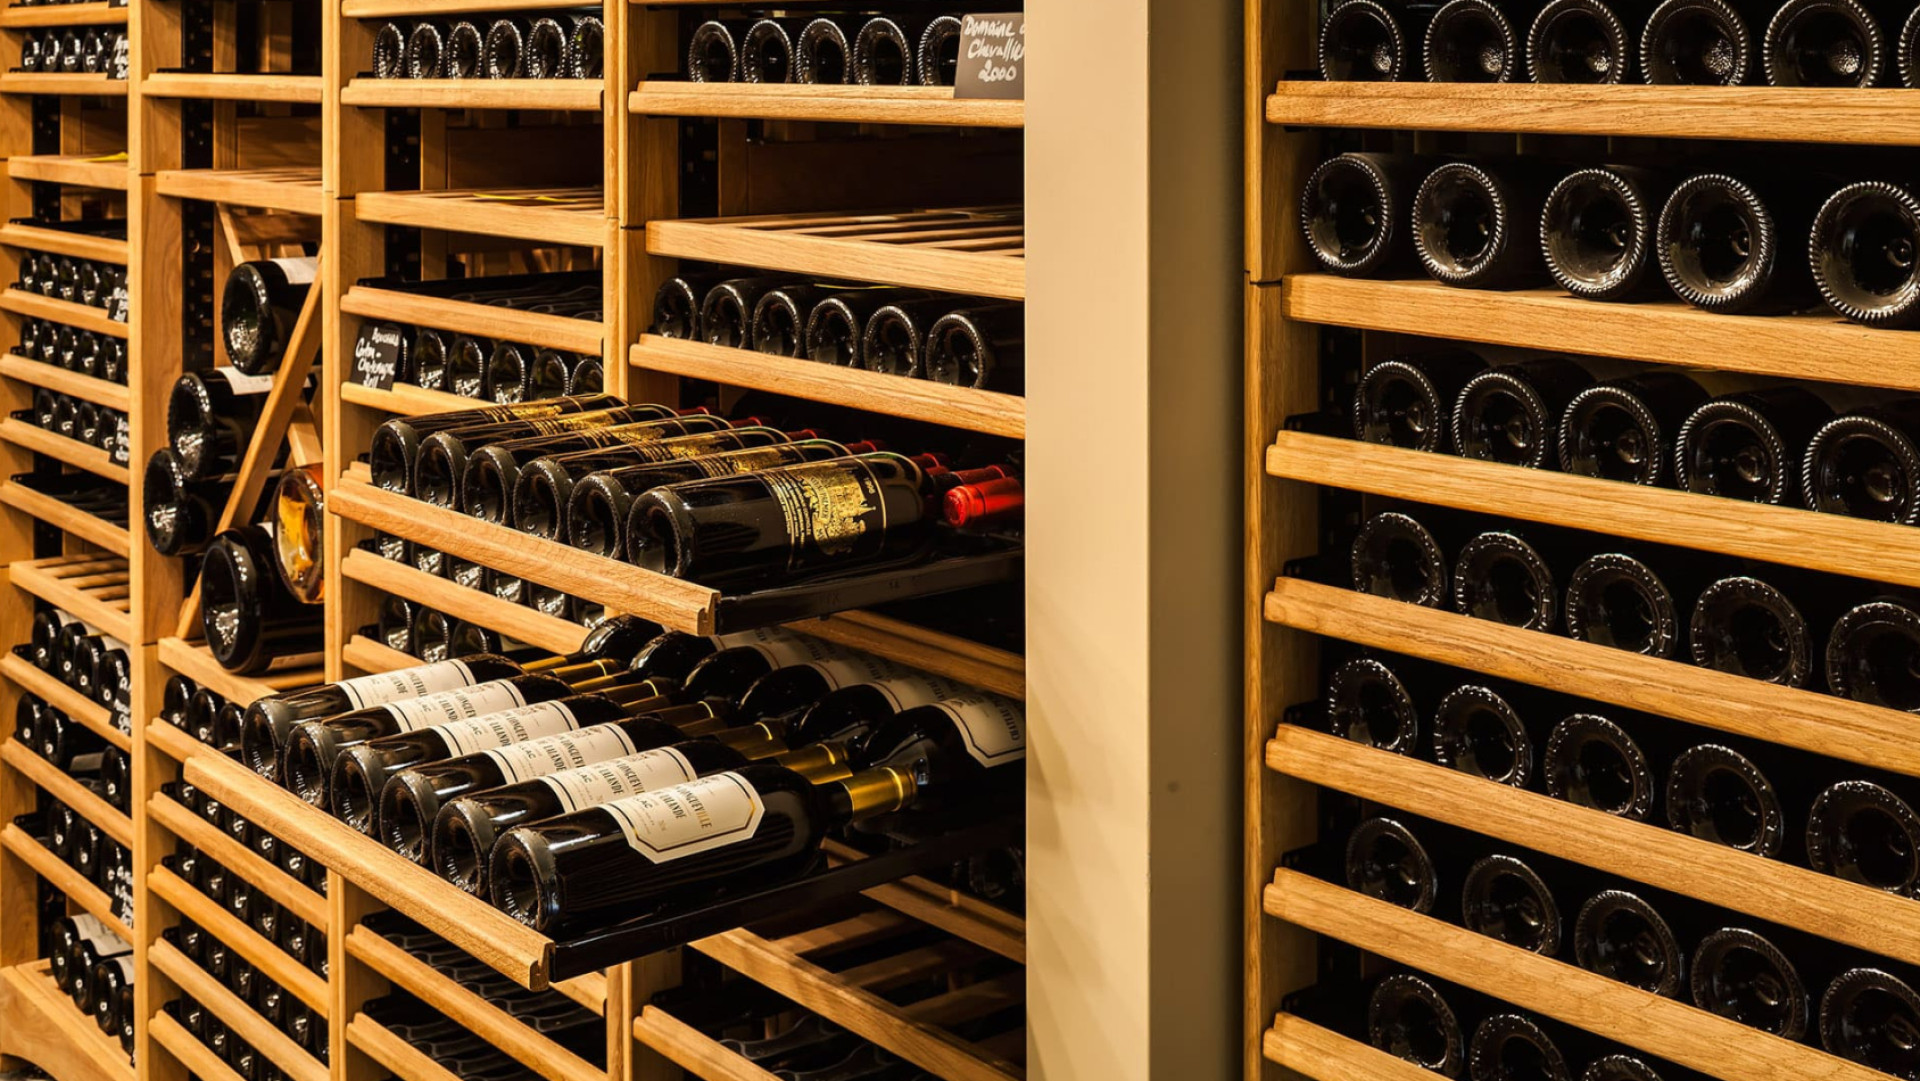 Mobilier pour restaurant, hôtel ou bar à vin qui gère une cave avec de nombreuses références de vin en stock ou module d’étagère et présentoirs déco et robustes pour caviste ou commerces qui souhaitent mettre en valeur leur offre vin en rayon.